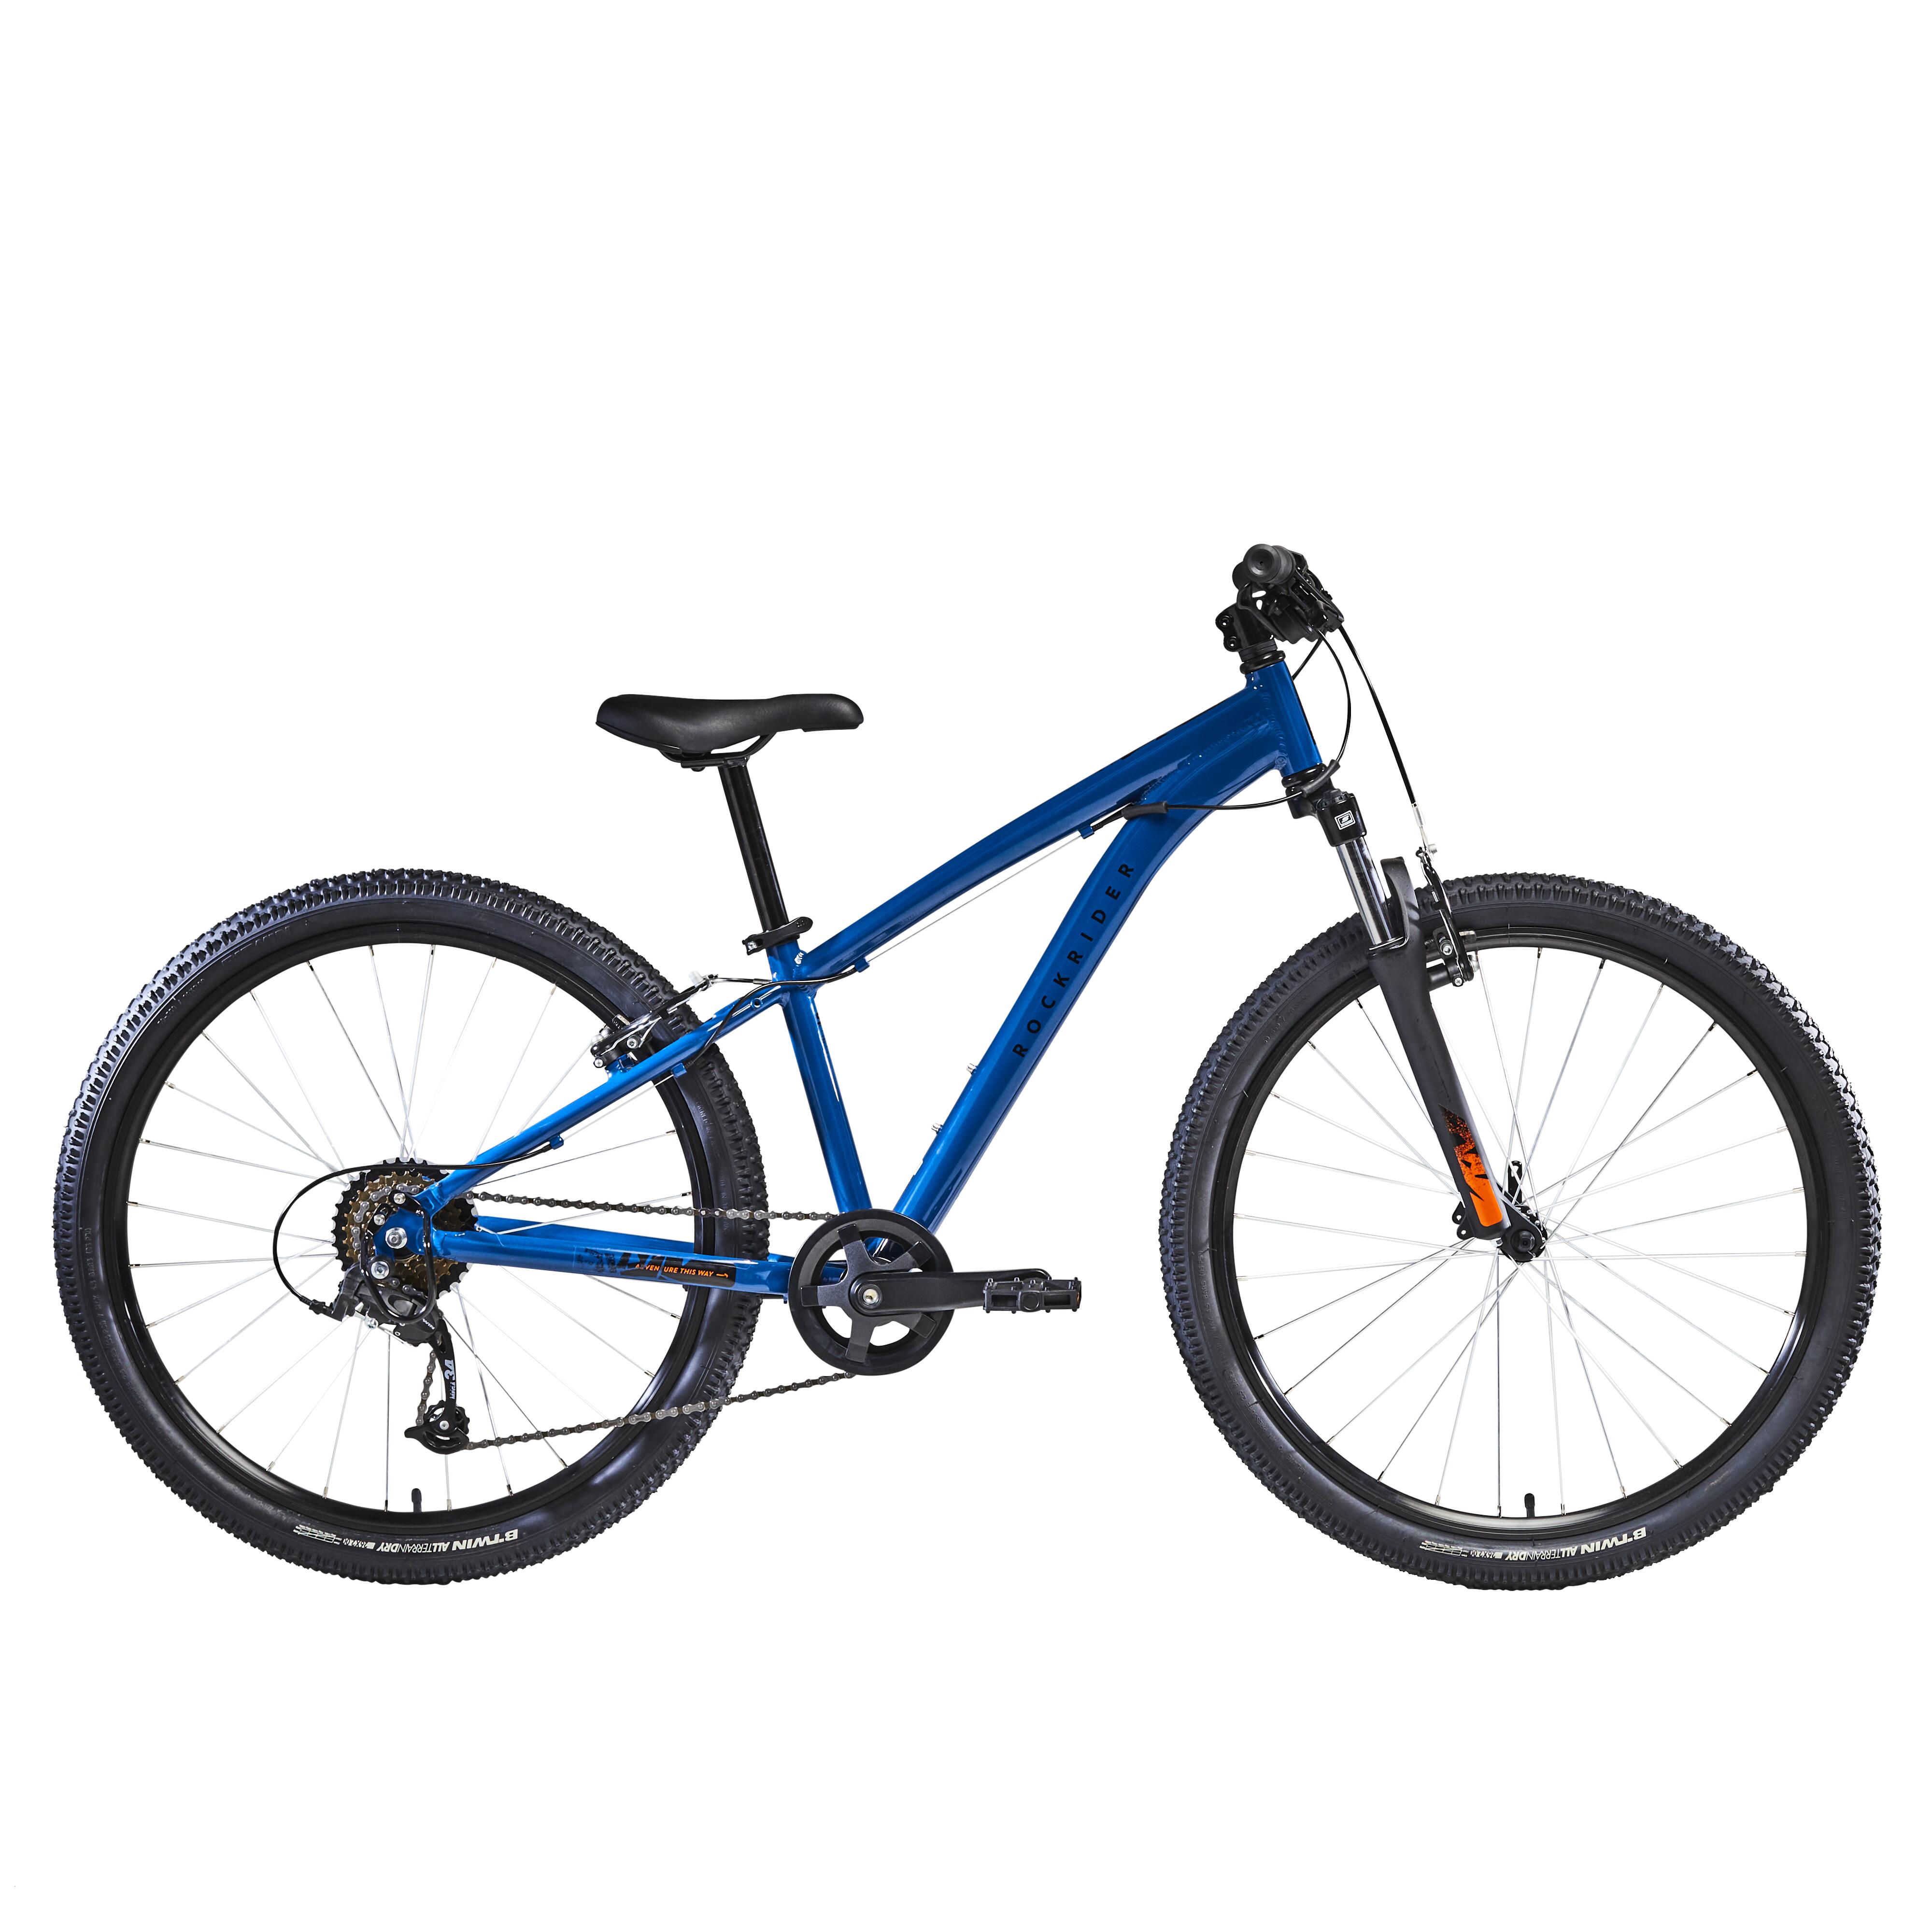 Bicicletă MTB Rockrider ST500 26″ Albastru Copii 9-12 ani 26"- imagine 2022